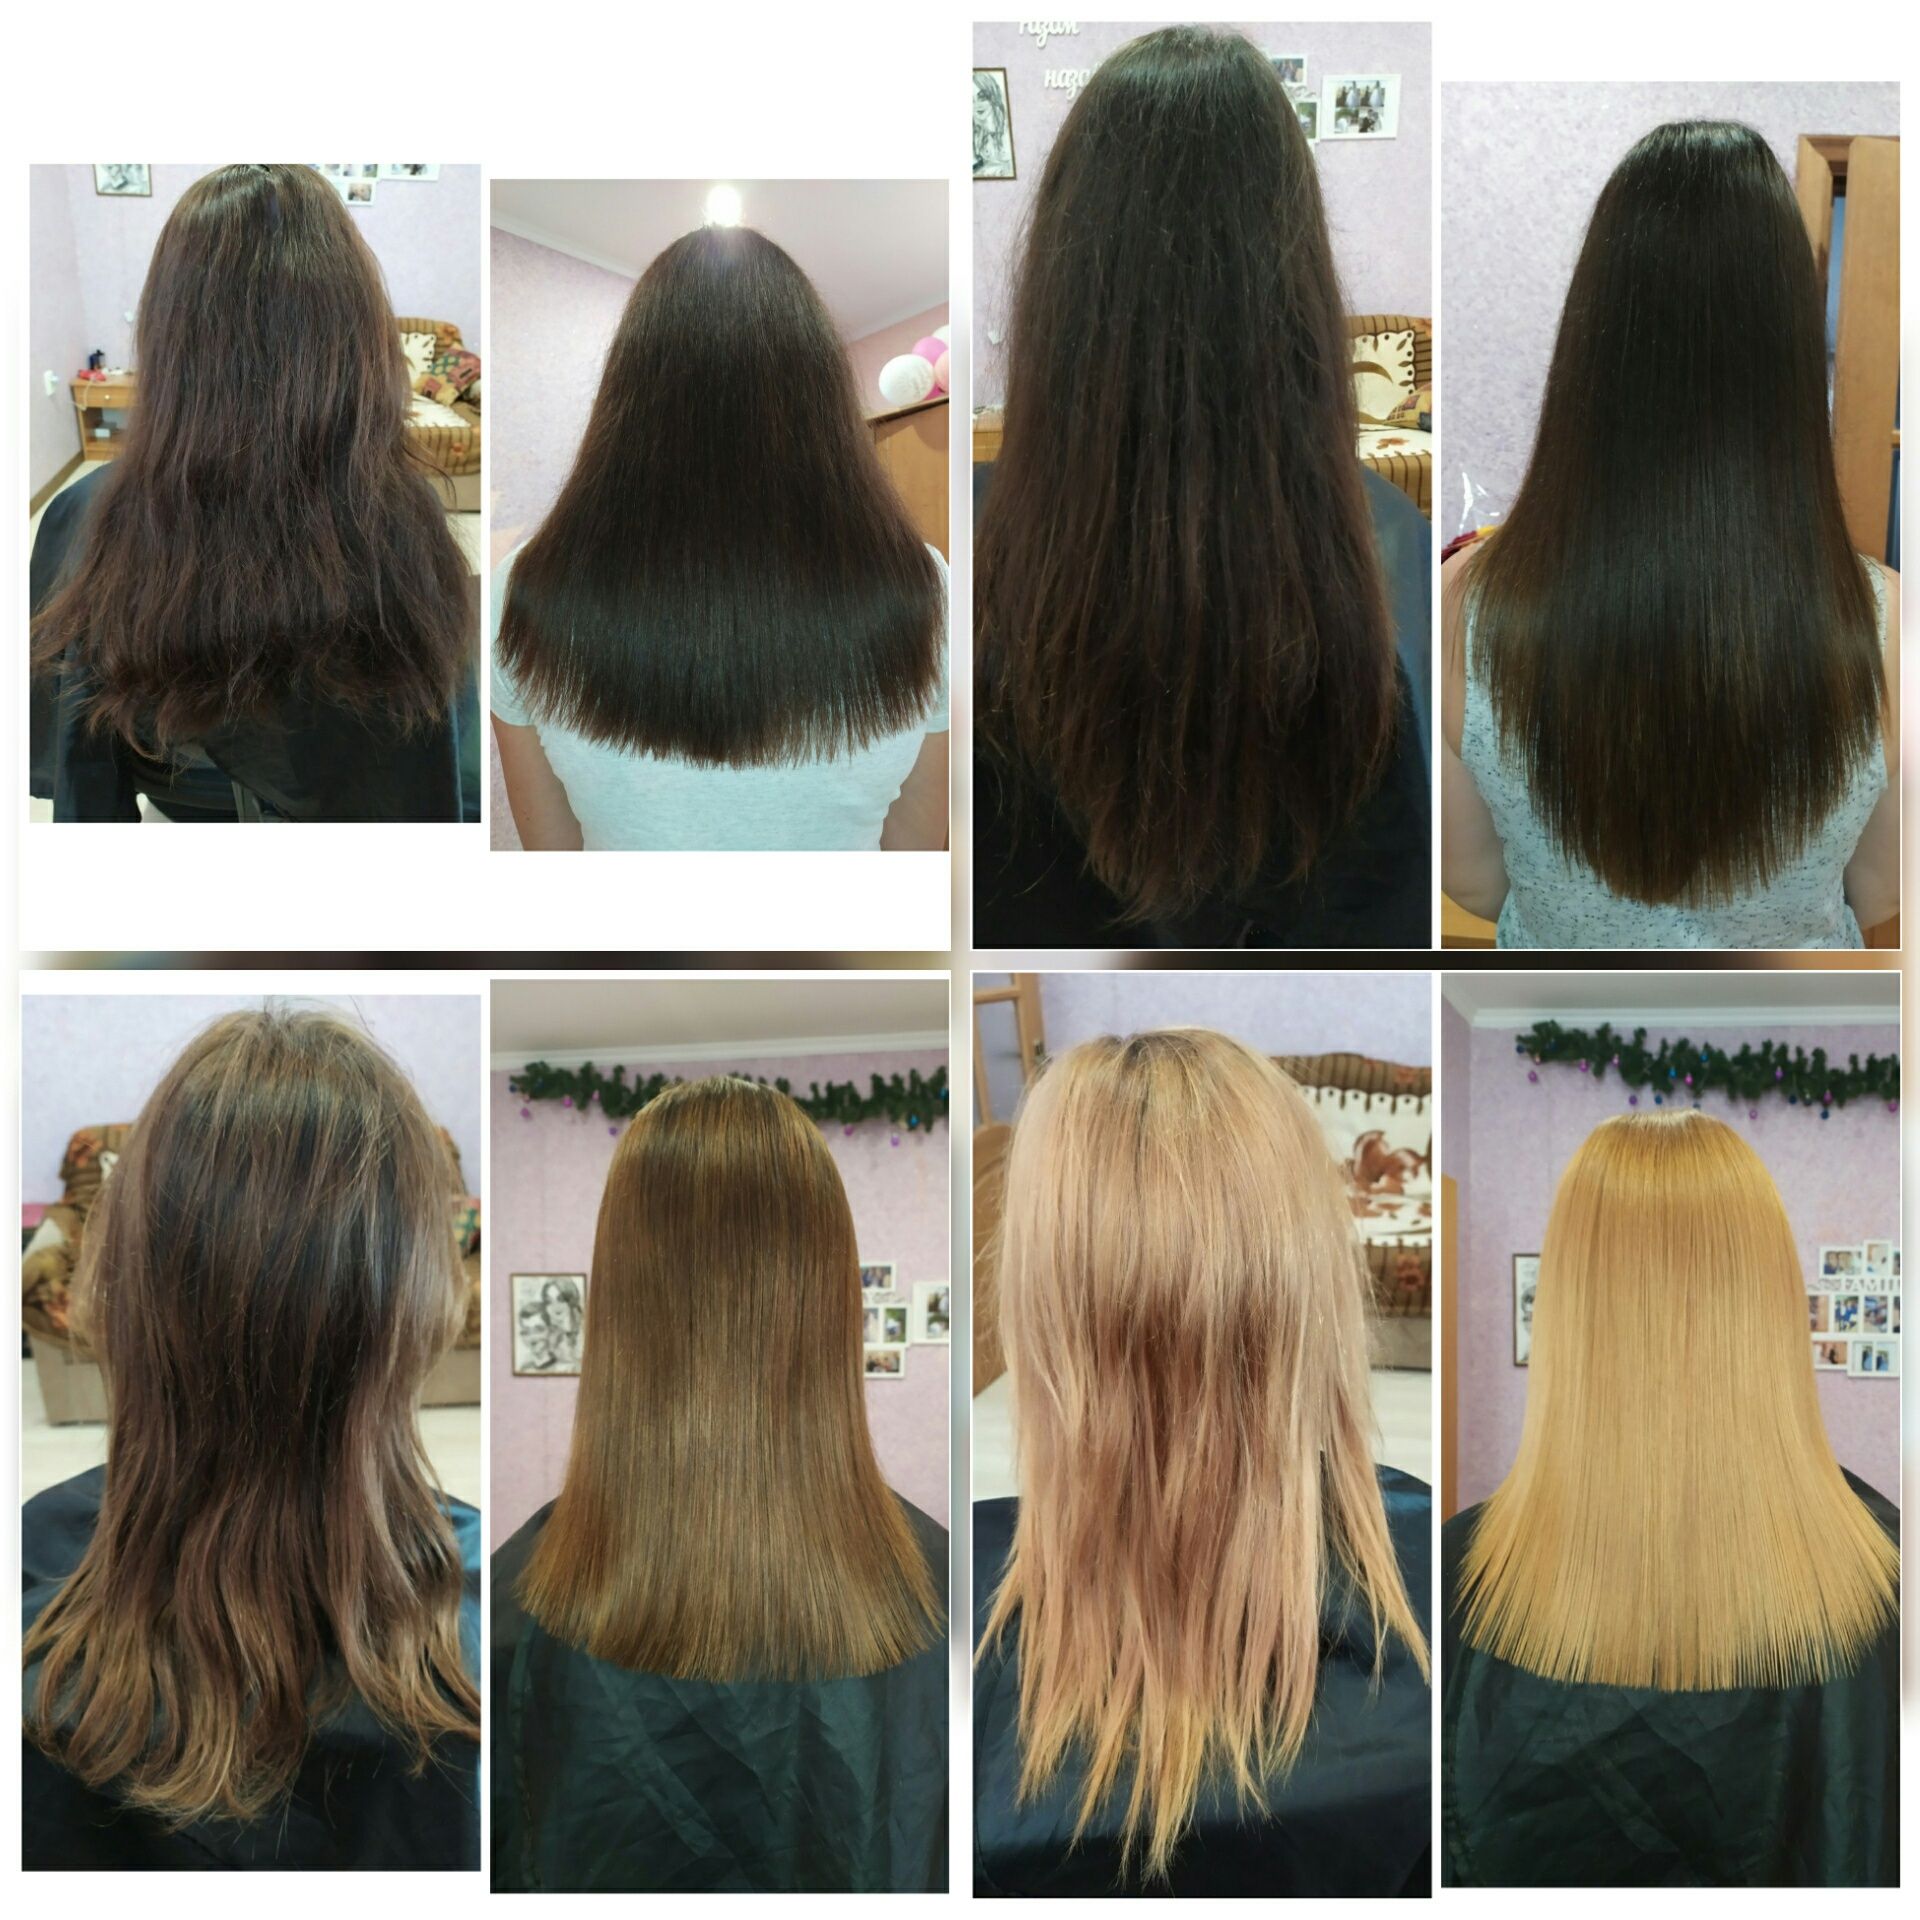 Полировка волос (с минимальной потерей длины) цена 200-250грн